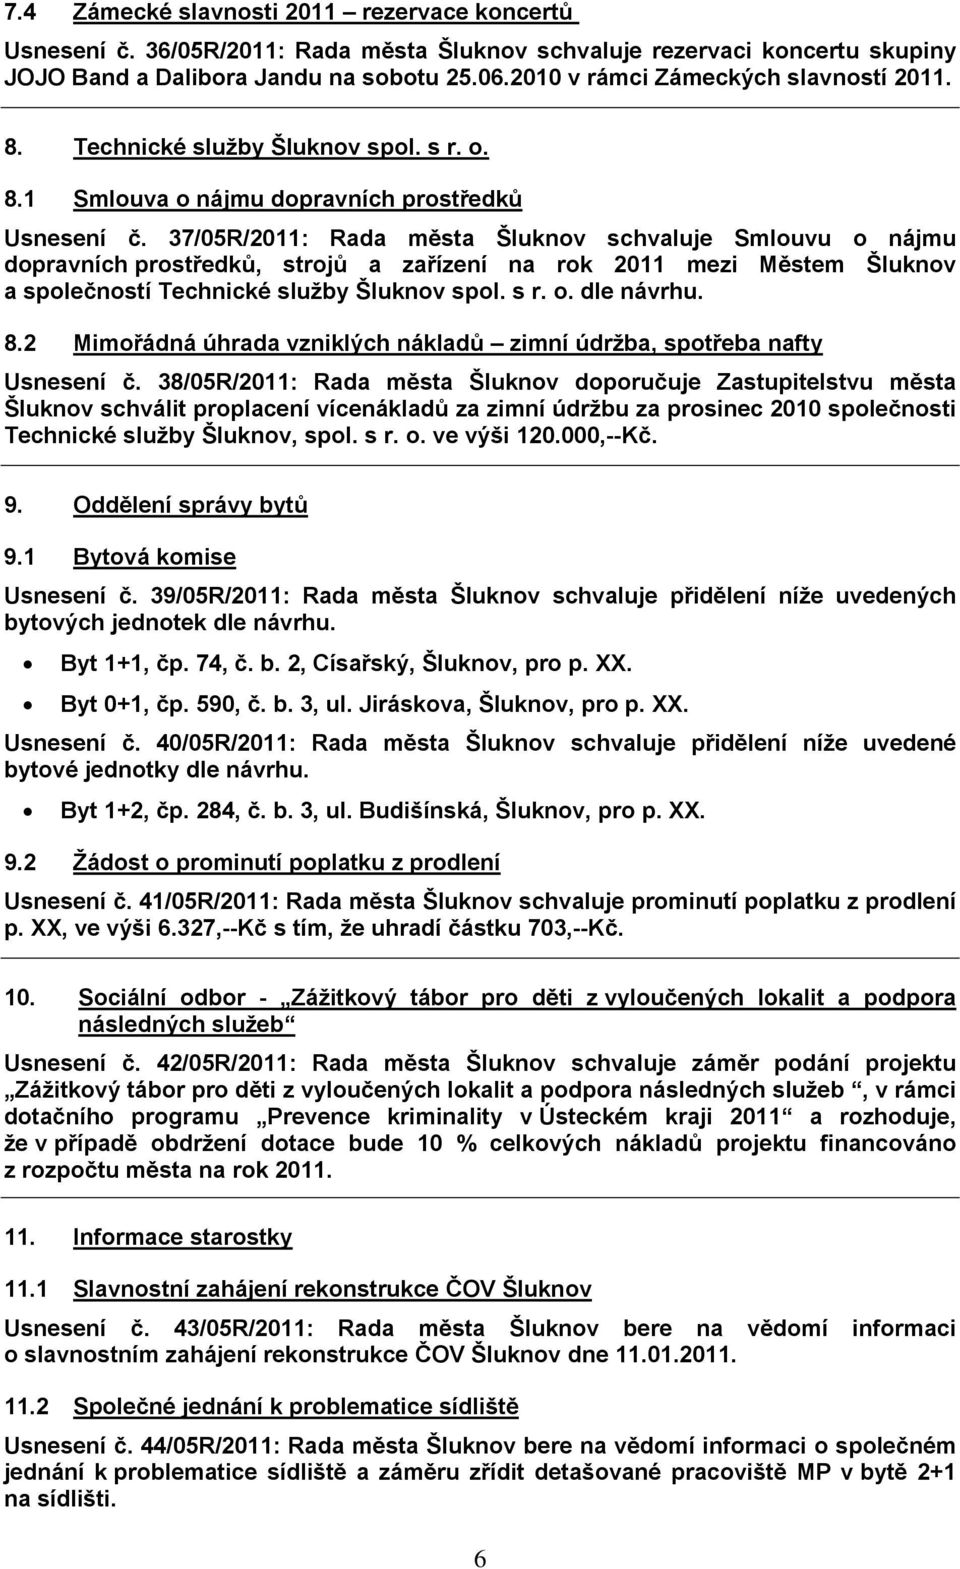 37/05R/2011: Rada města Šluknov schvaluje Smlouvu o nájmu dopravních prostředků, strojů a zařízení na rok 2011 mezi Městem Šluknov a společností Technické služby Šluknov spol. s r. o. dle návrhu. 8.